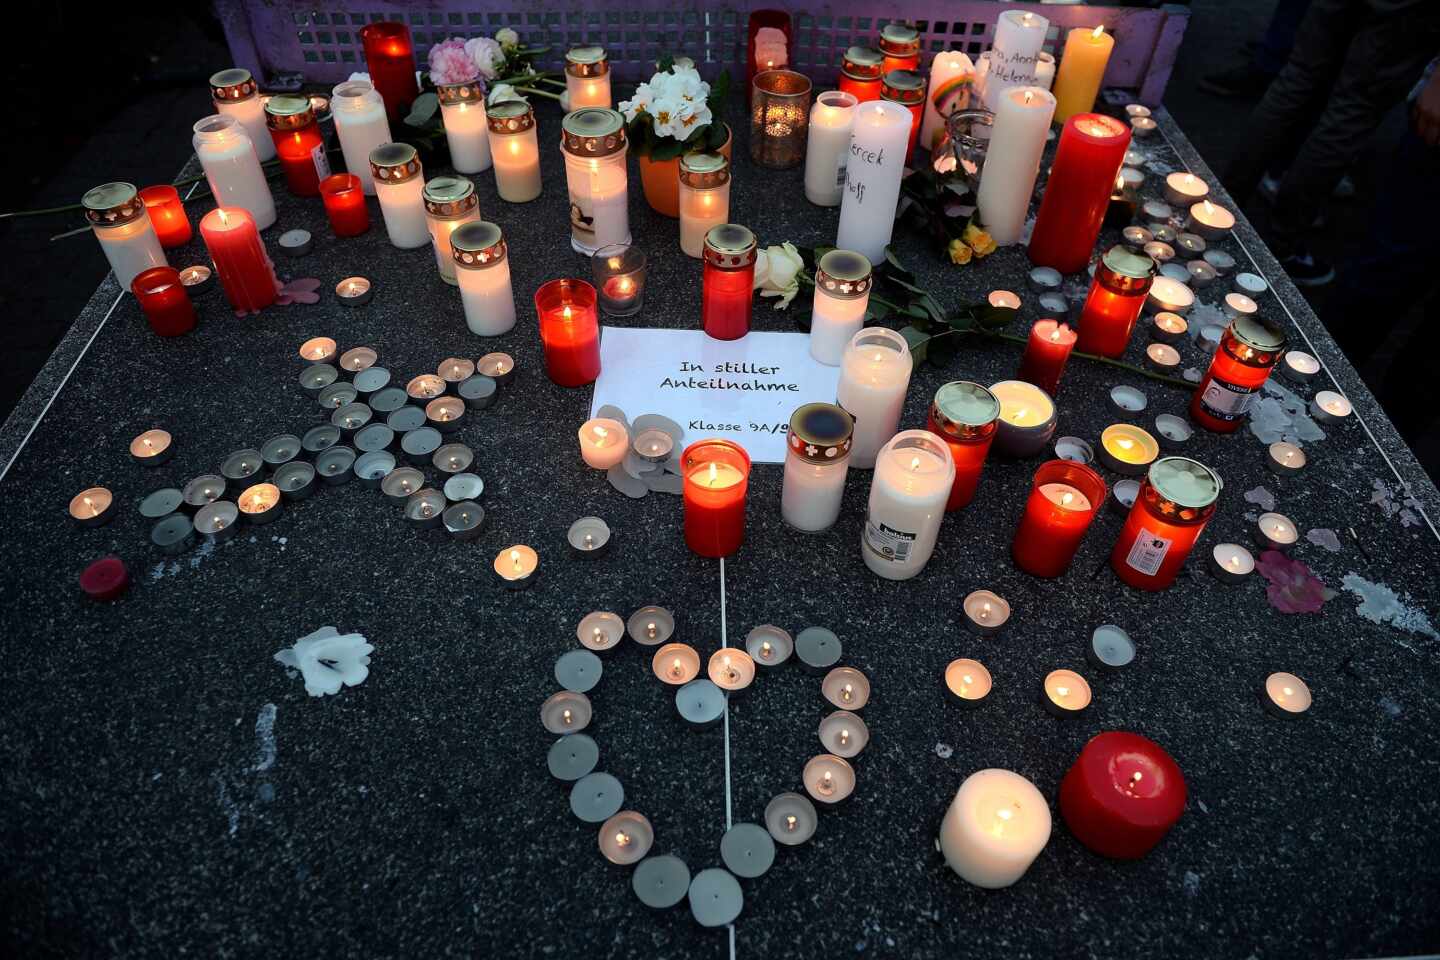 Germanwings, condenada a indemnizar con 1,5 millones a los familiares de cinco víctimas